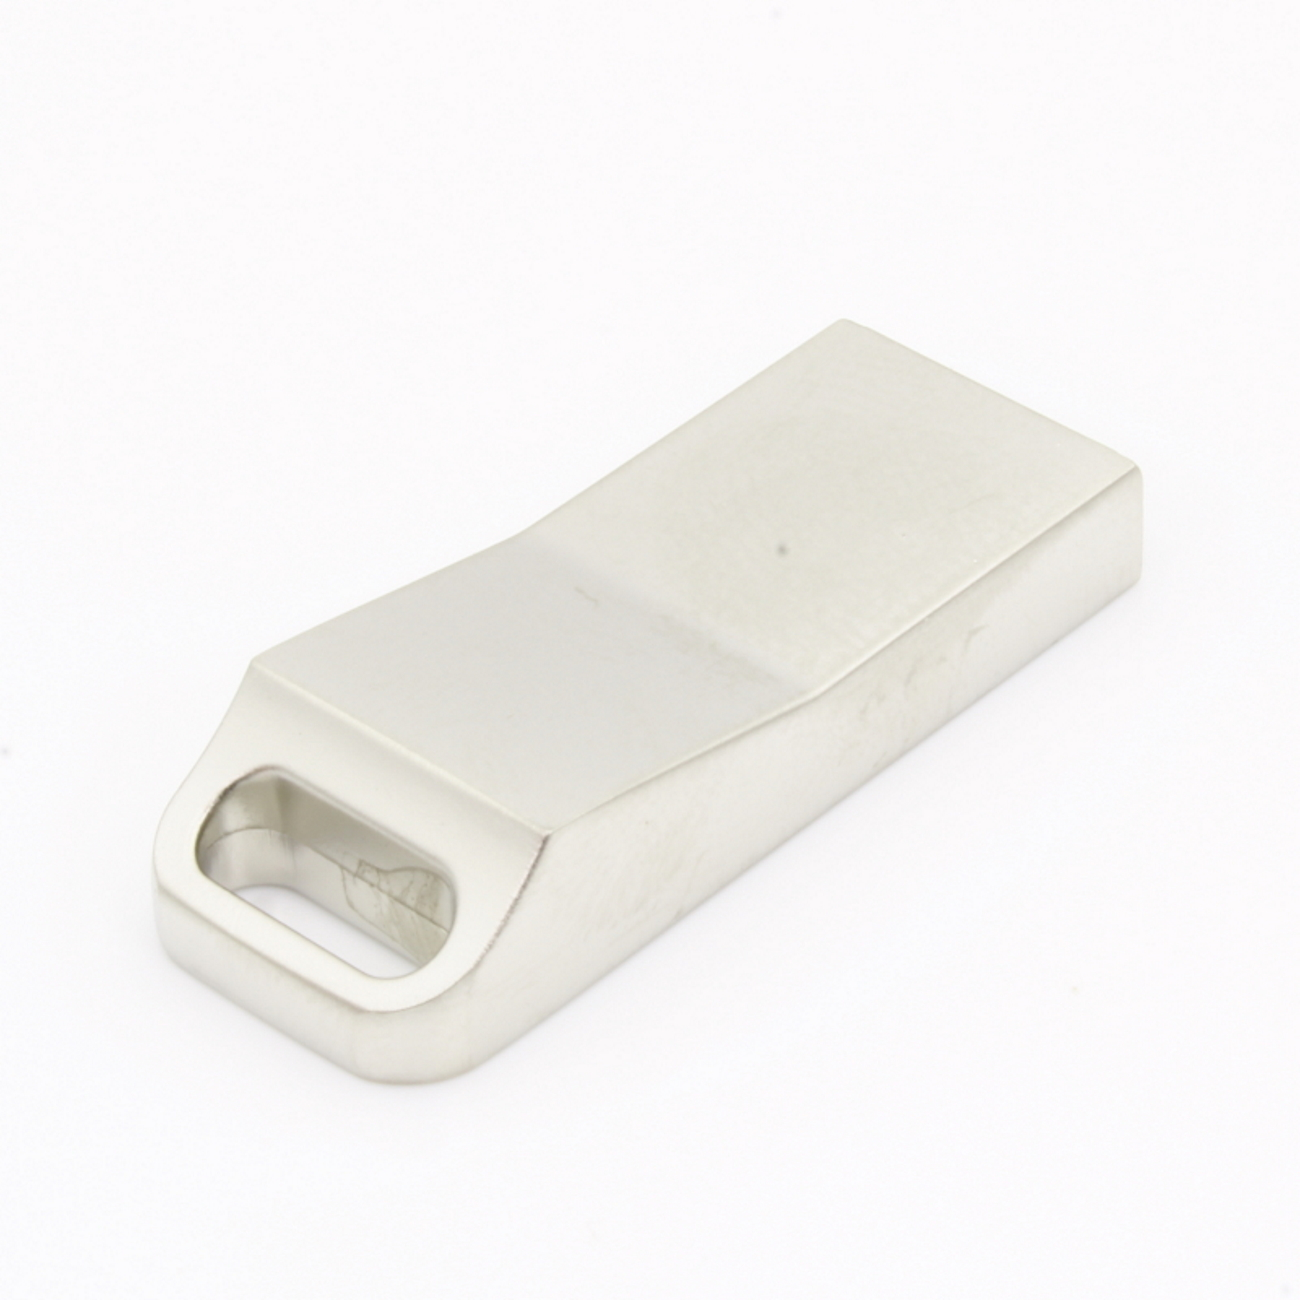 USB GERMANY ®Metall ME15 (Silber, 4 GB) USB-Stick